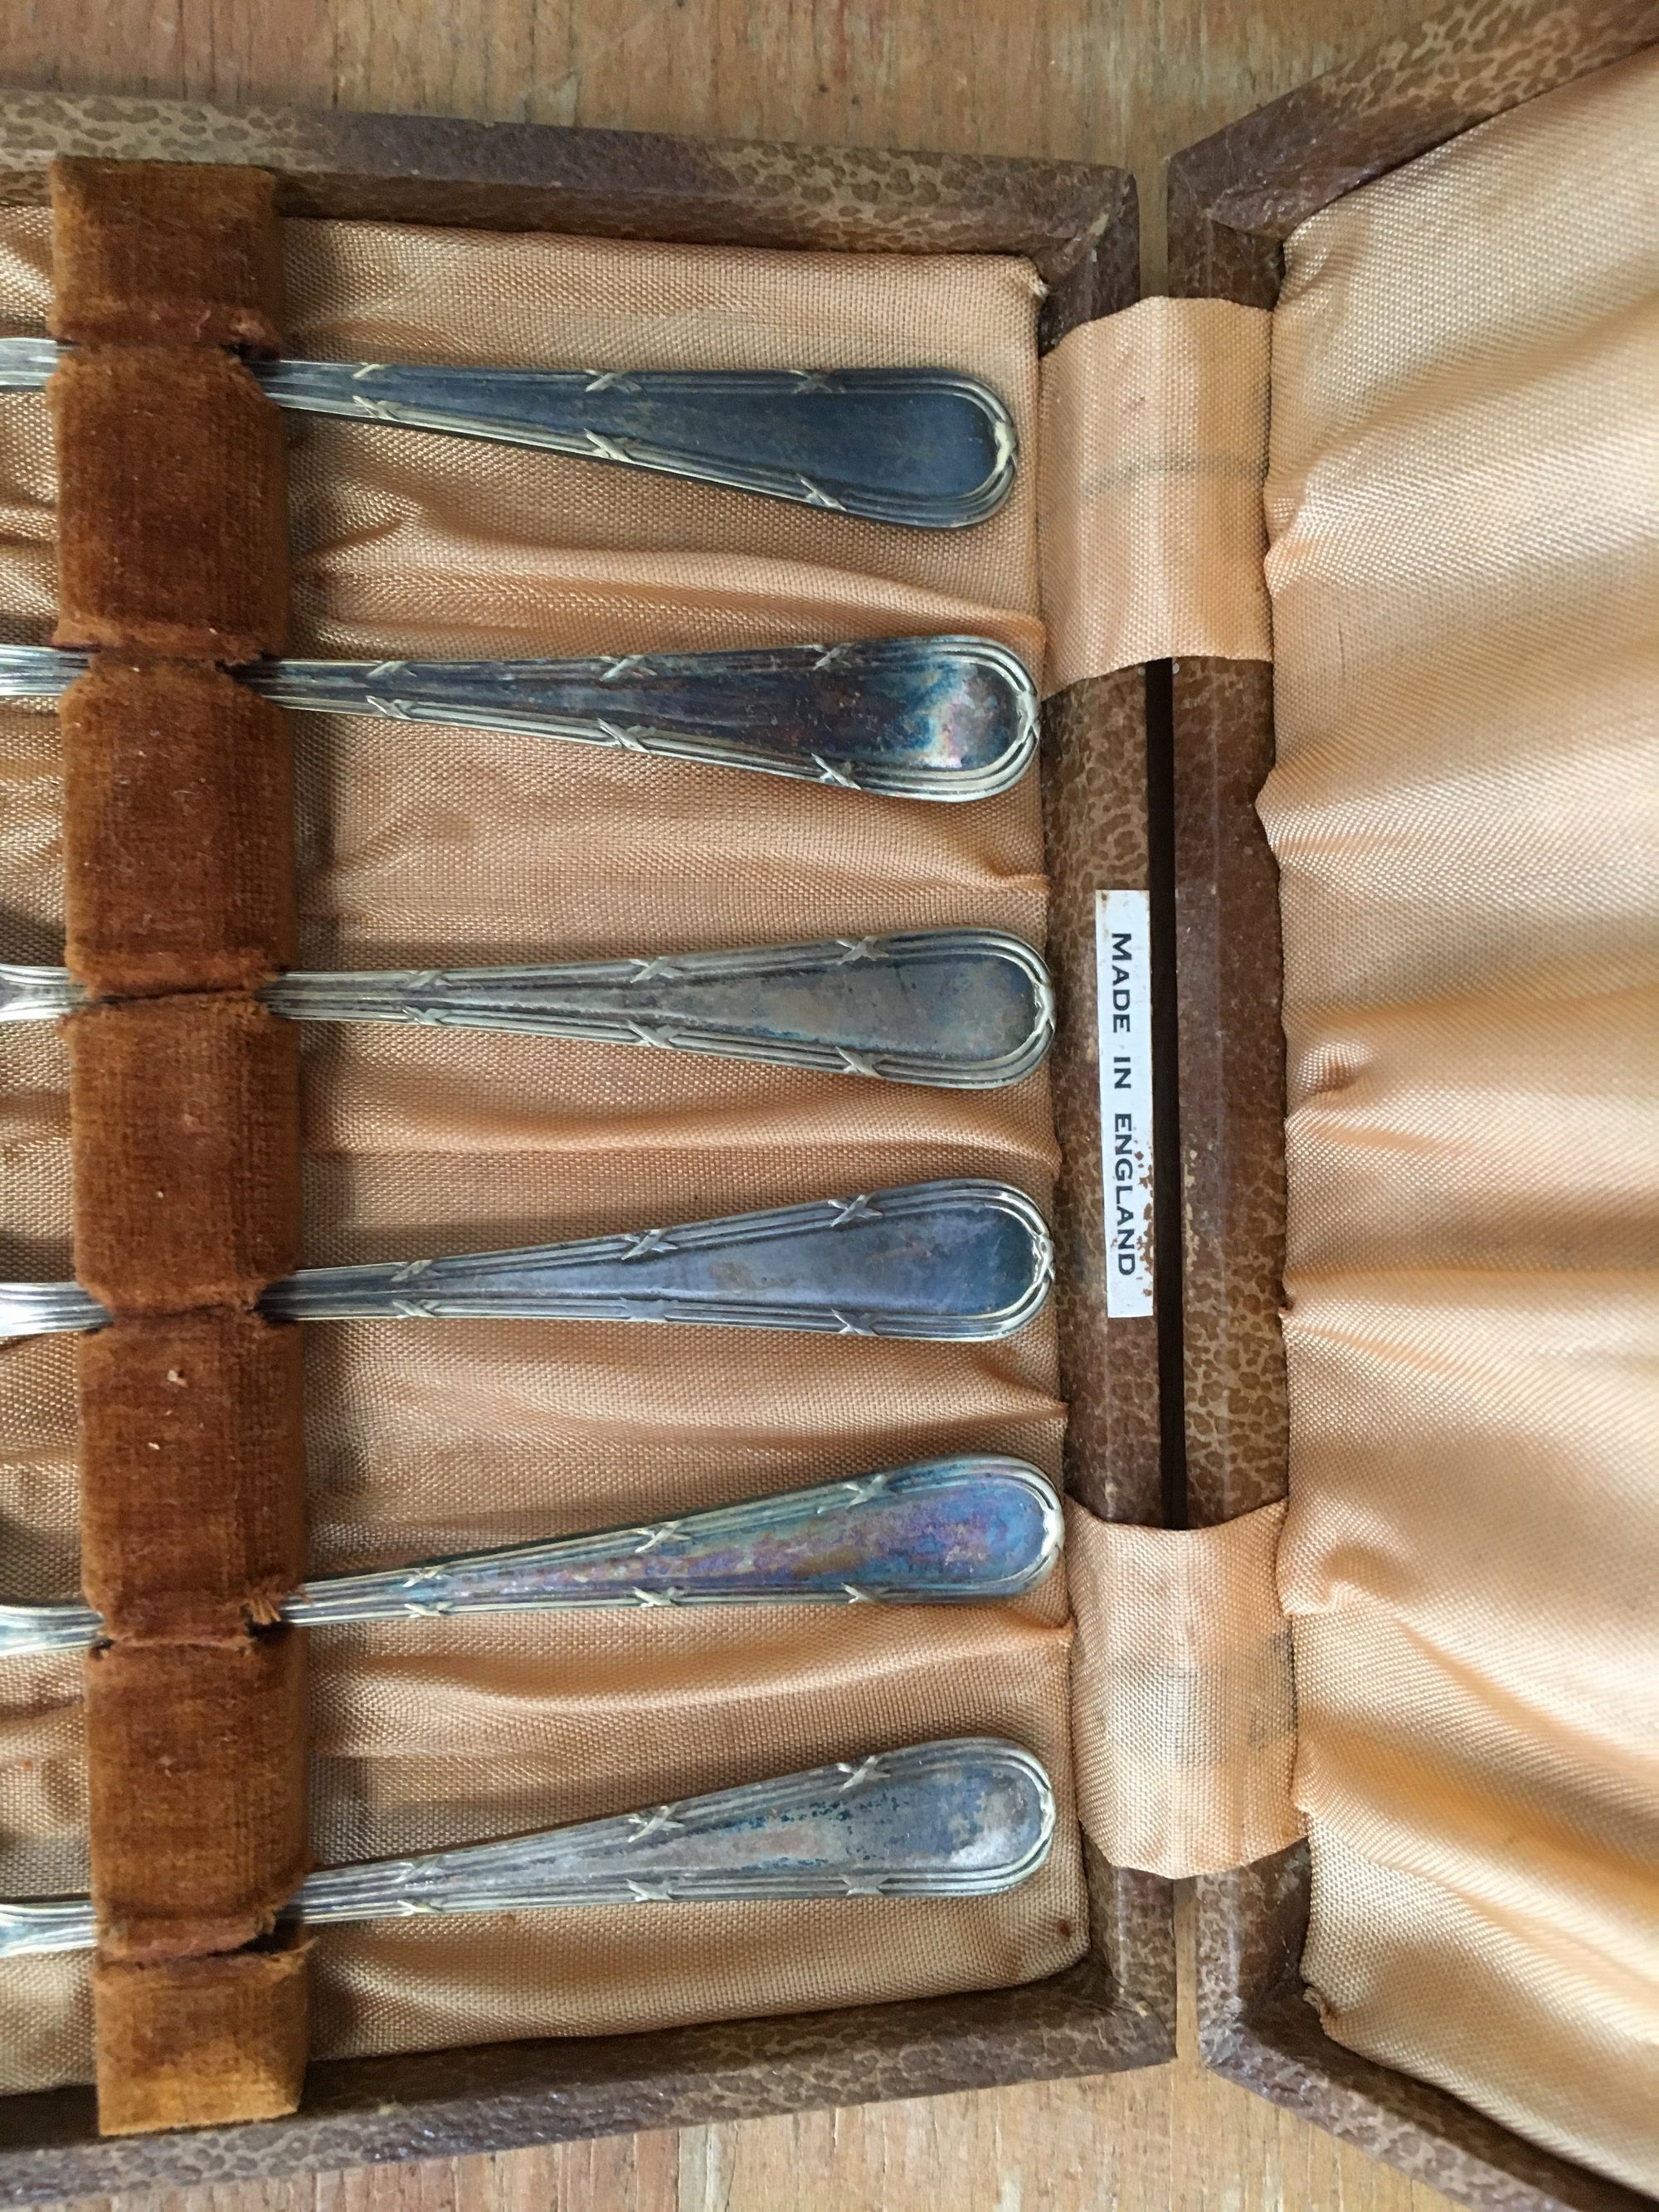 Vintage Cake Fork Set In Leather Case - 2ndhandwarehouse.com